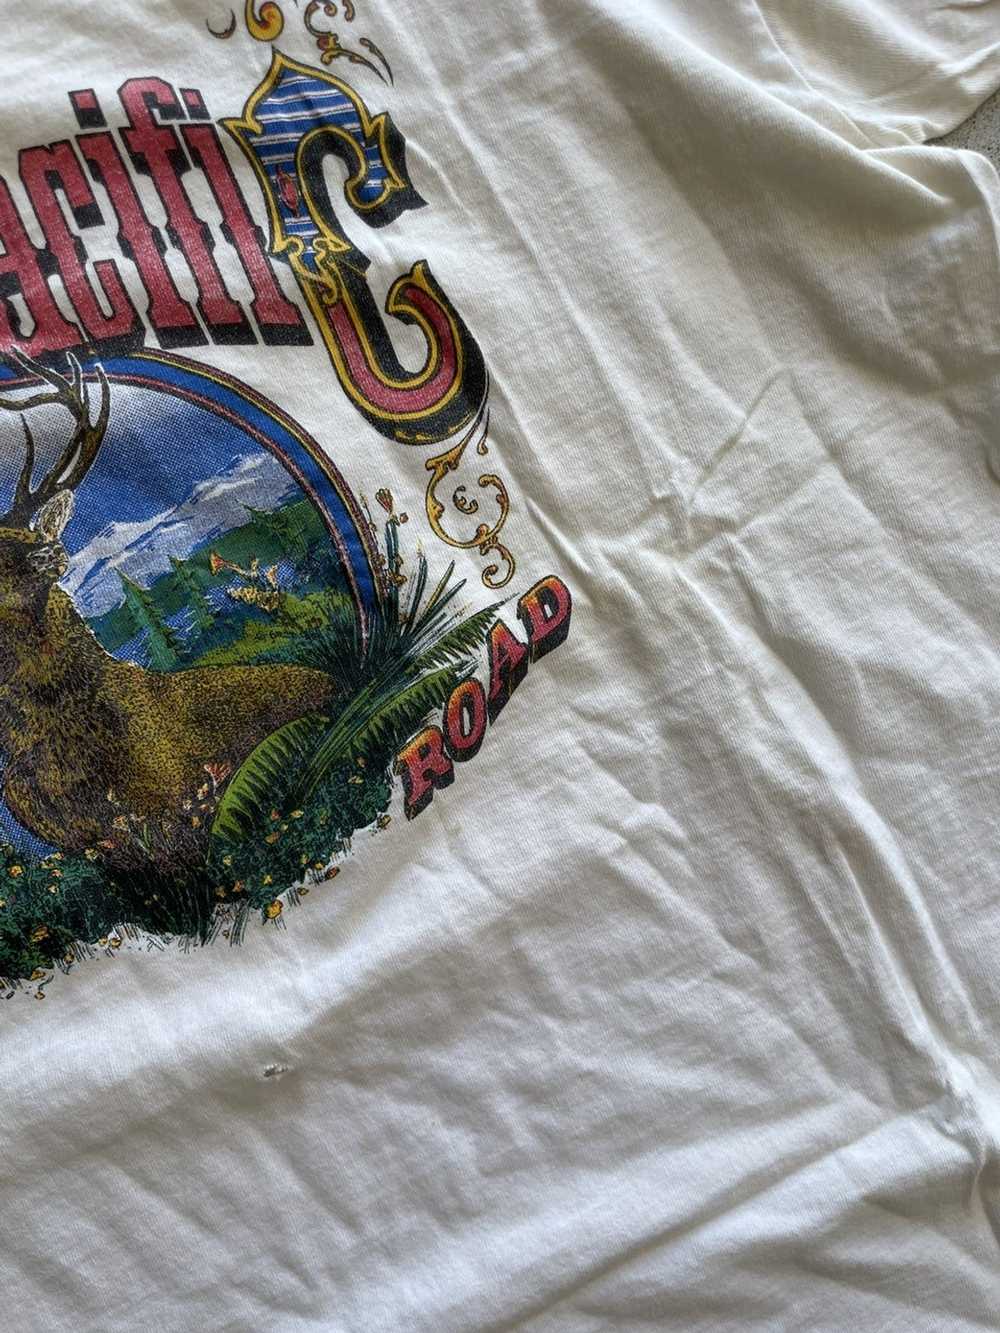 Vintage Vintage Union Pacific elk logo t shirt - image 3